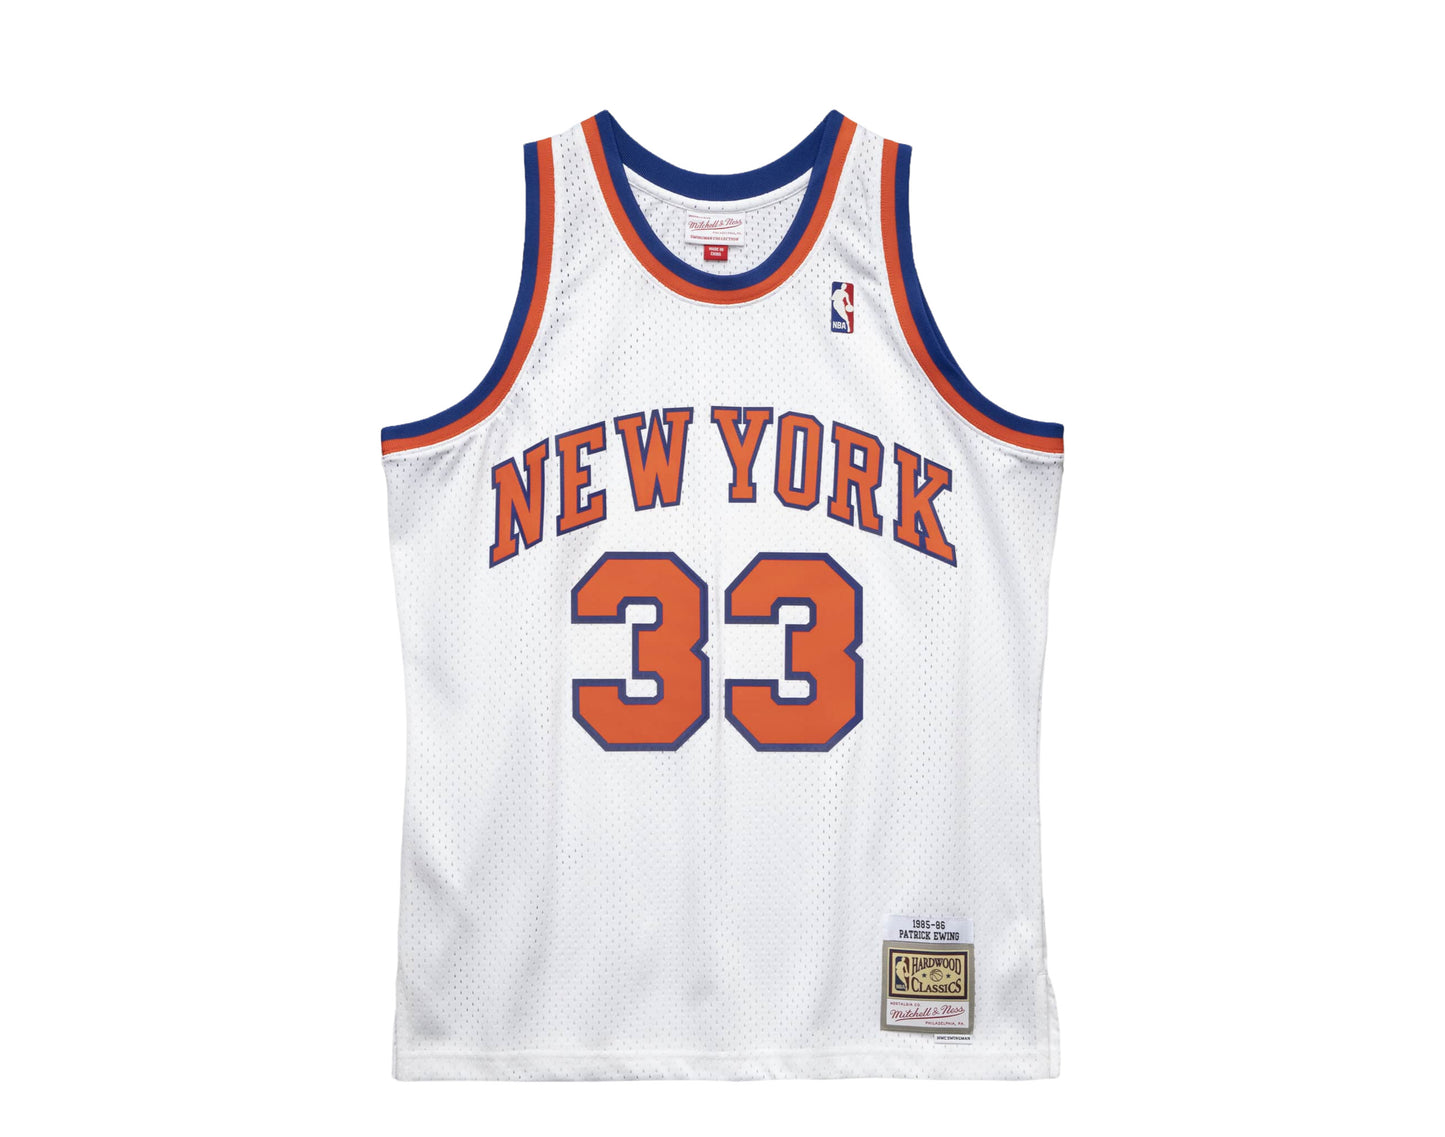 Mitchell & Ness Swingman Patrick Ewing New York Knicks NBA 1985-86 Jersey White / S